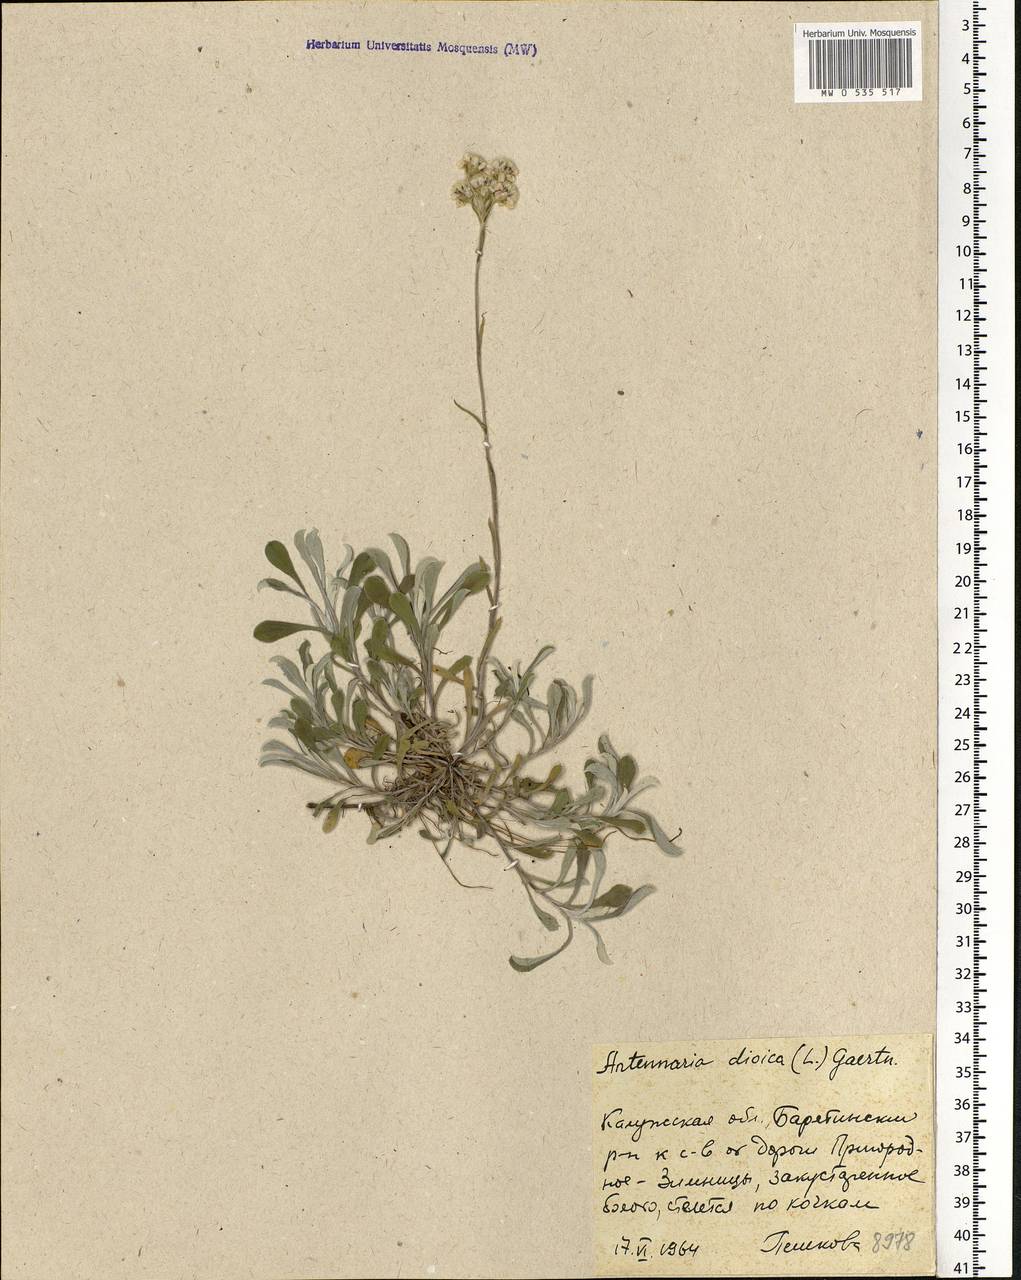 Antennaria dioica (L.) Gaertn., Eastern Europe, Central region (E4) (Russia)